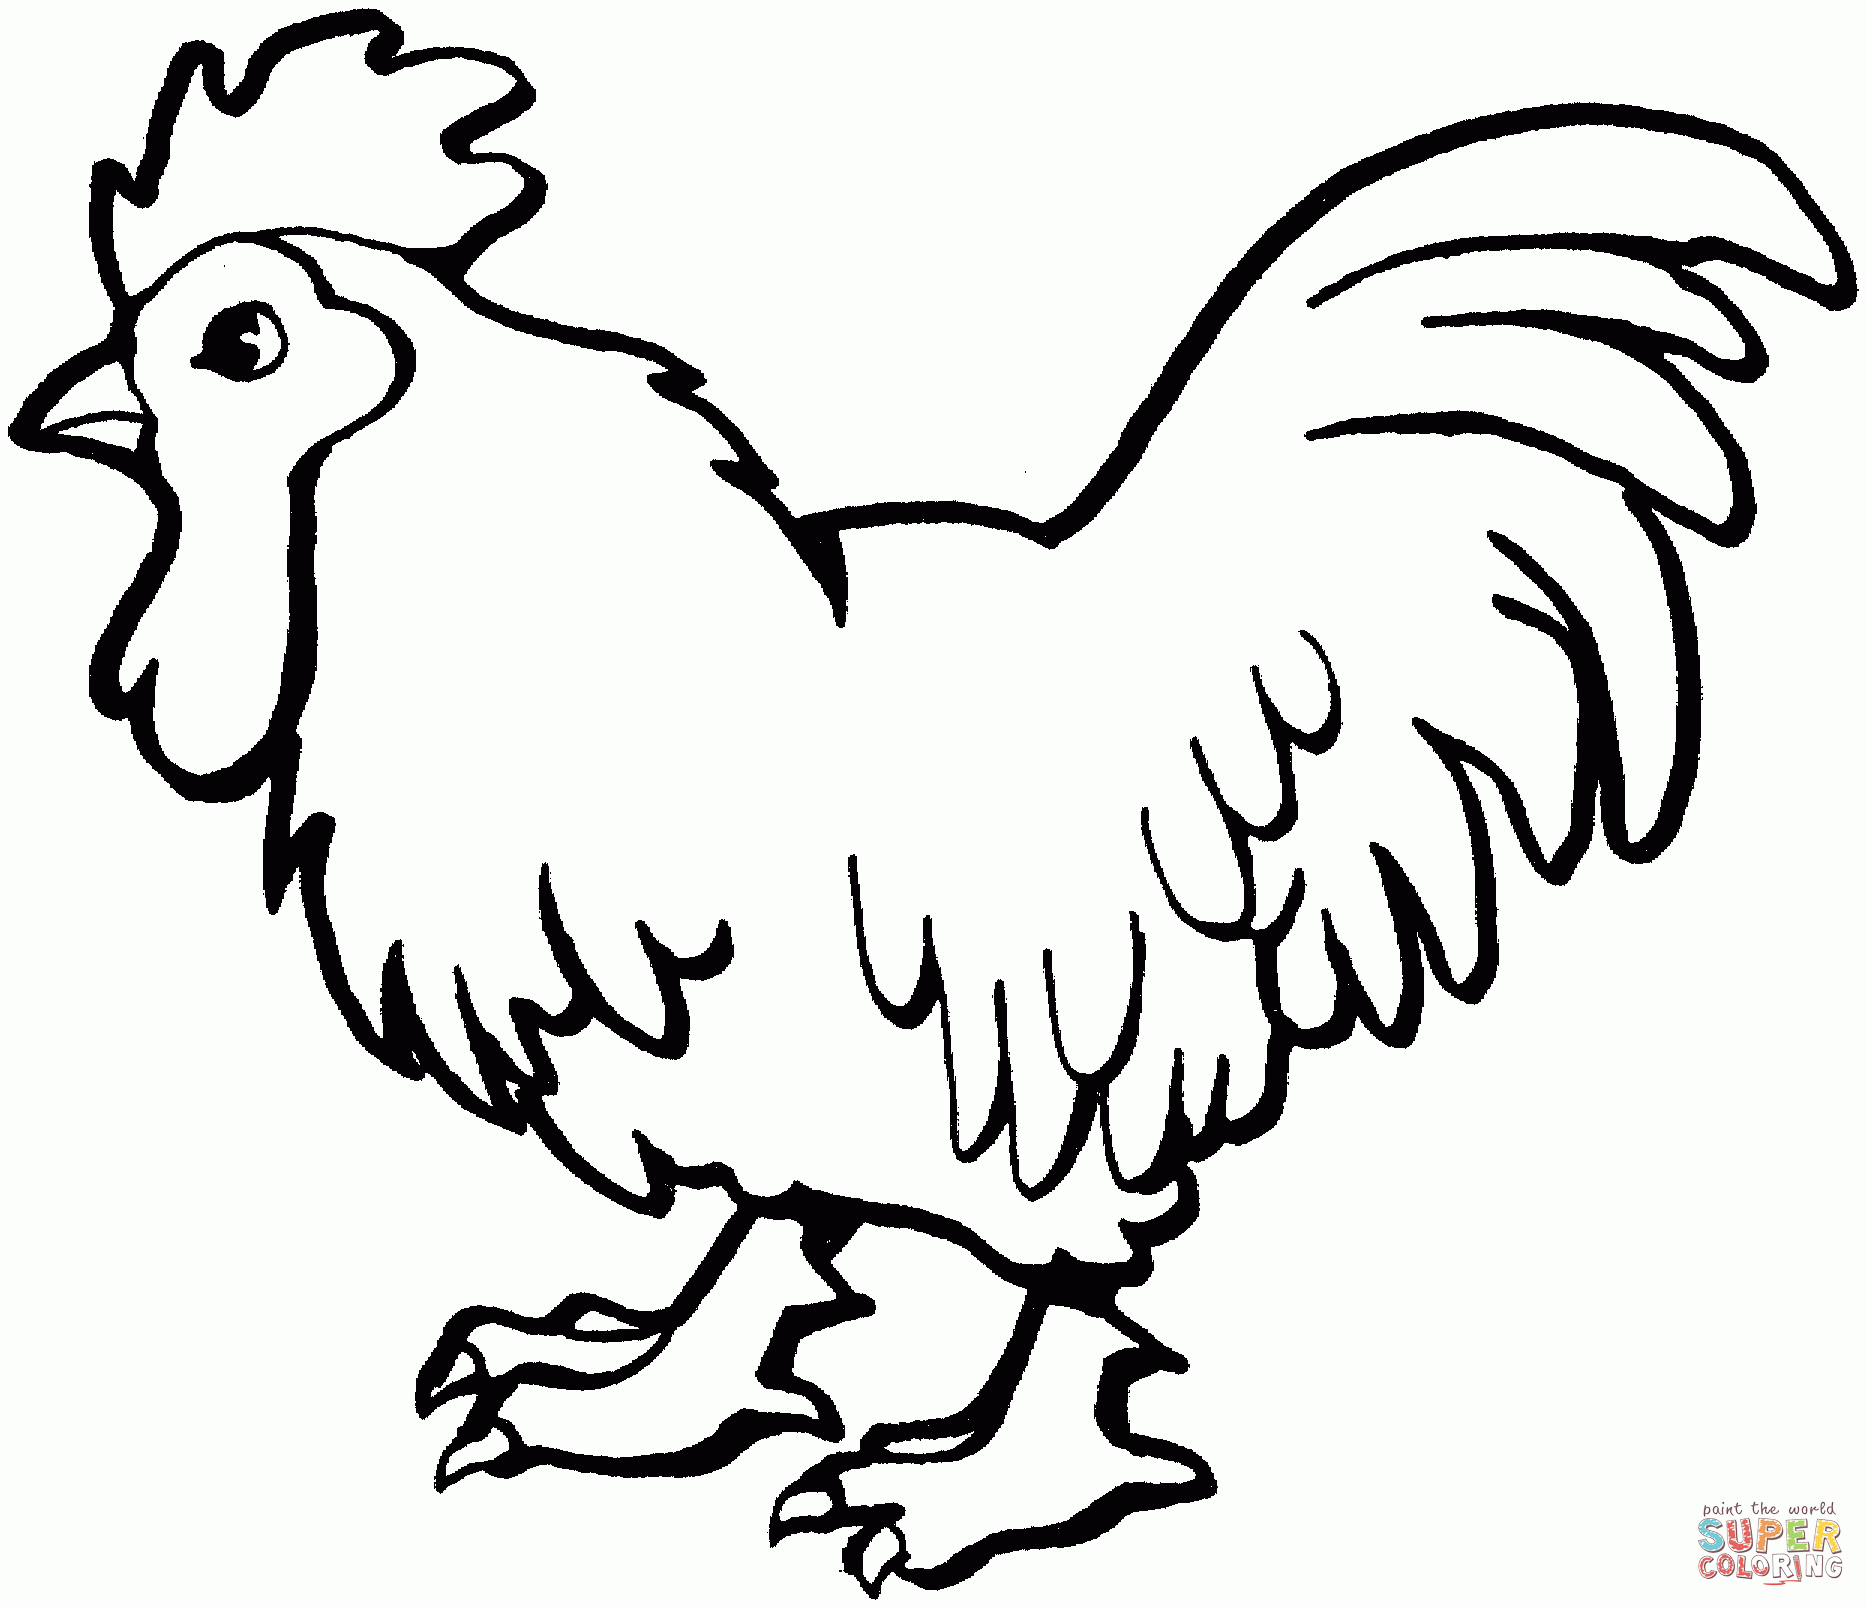 Ausmalbilder Hühner - Malvorlagen Kostenlos Zum Ausdrucken verwandt mit Ausmalbild Huhn